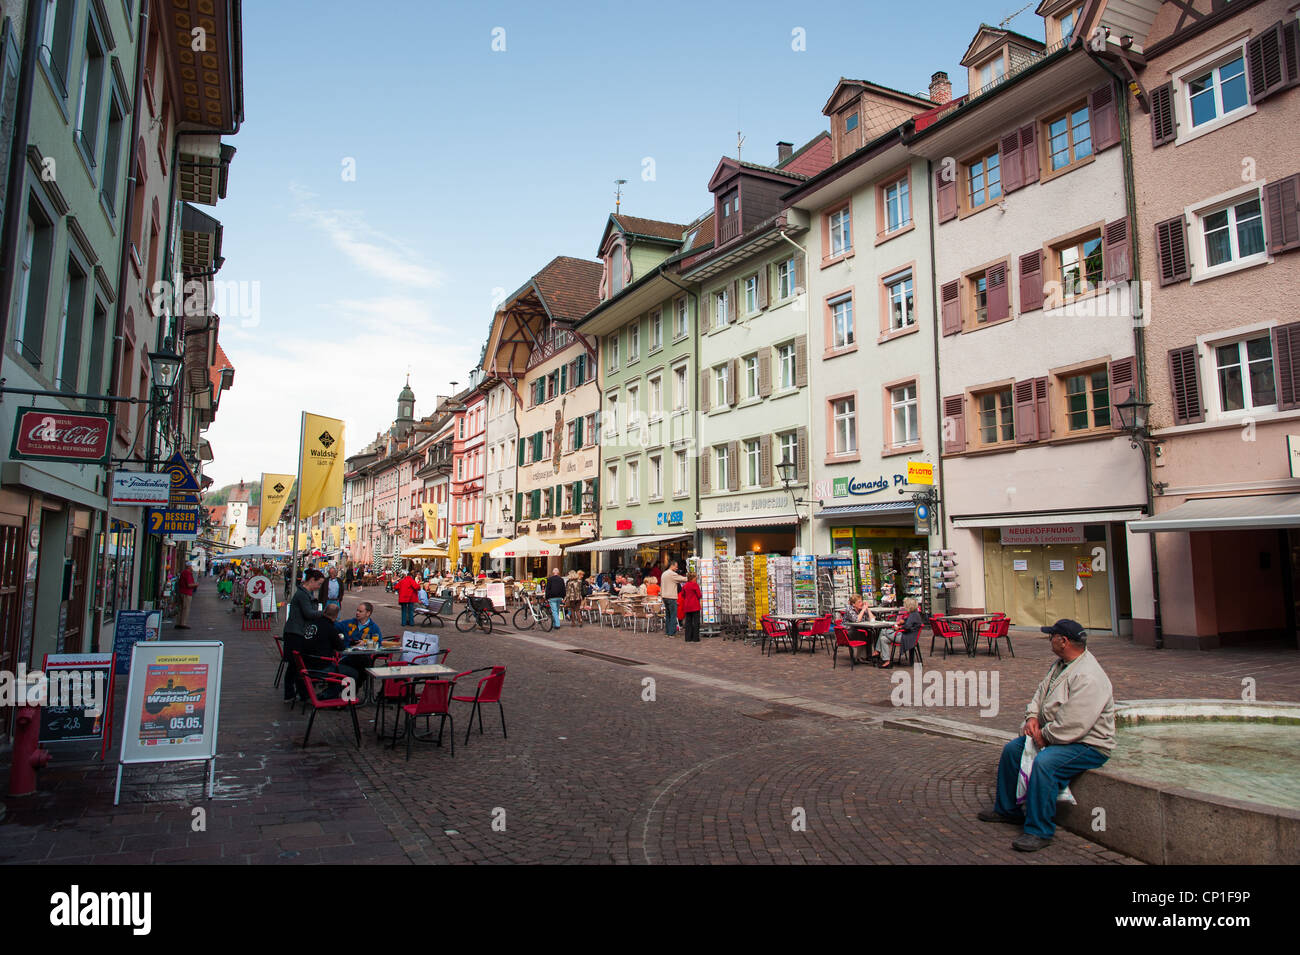 Centro histórico de la ciudad de Waldshut, Alemania, 2012 Foto de stock